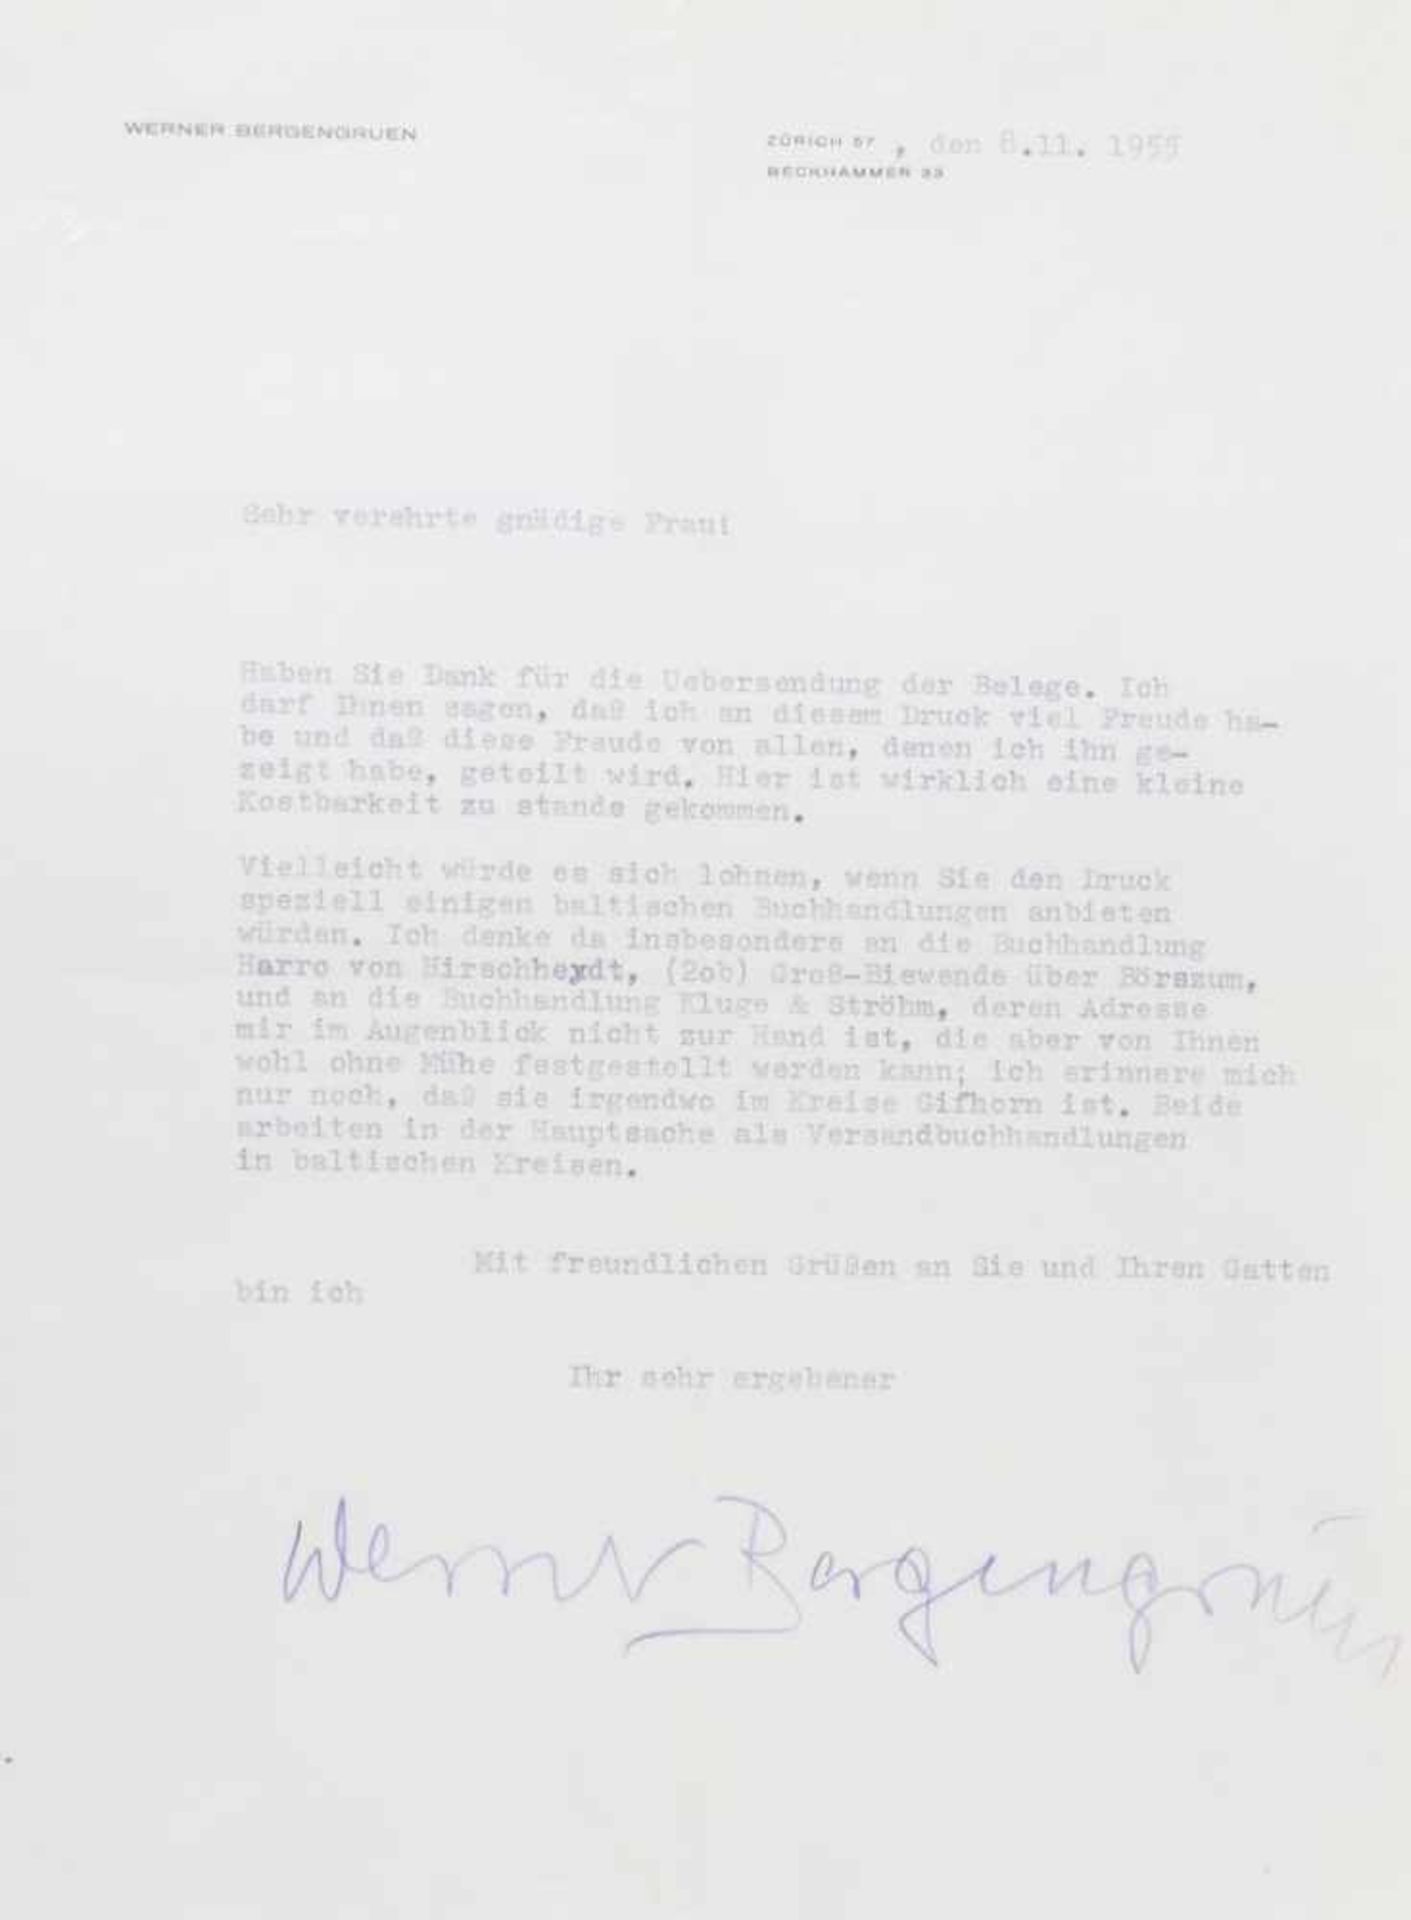 Bergengruen, W., Schriftsteller (1892-1964).Zwei masch. Briefe mit e. U. Dat. 1955-63. - Mit